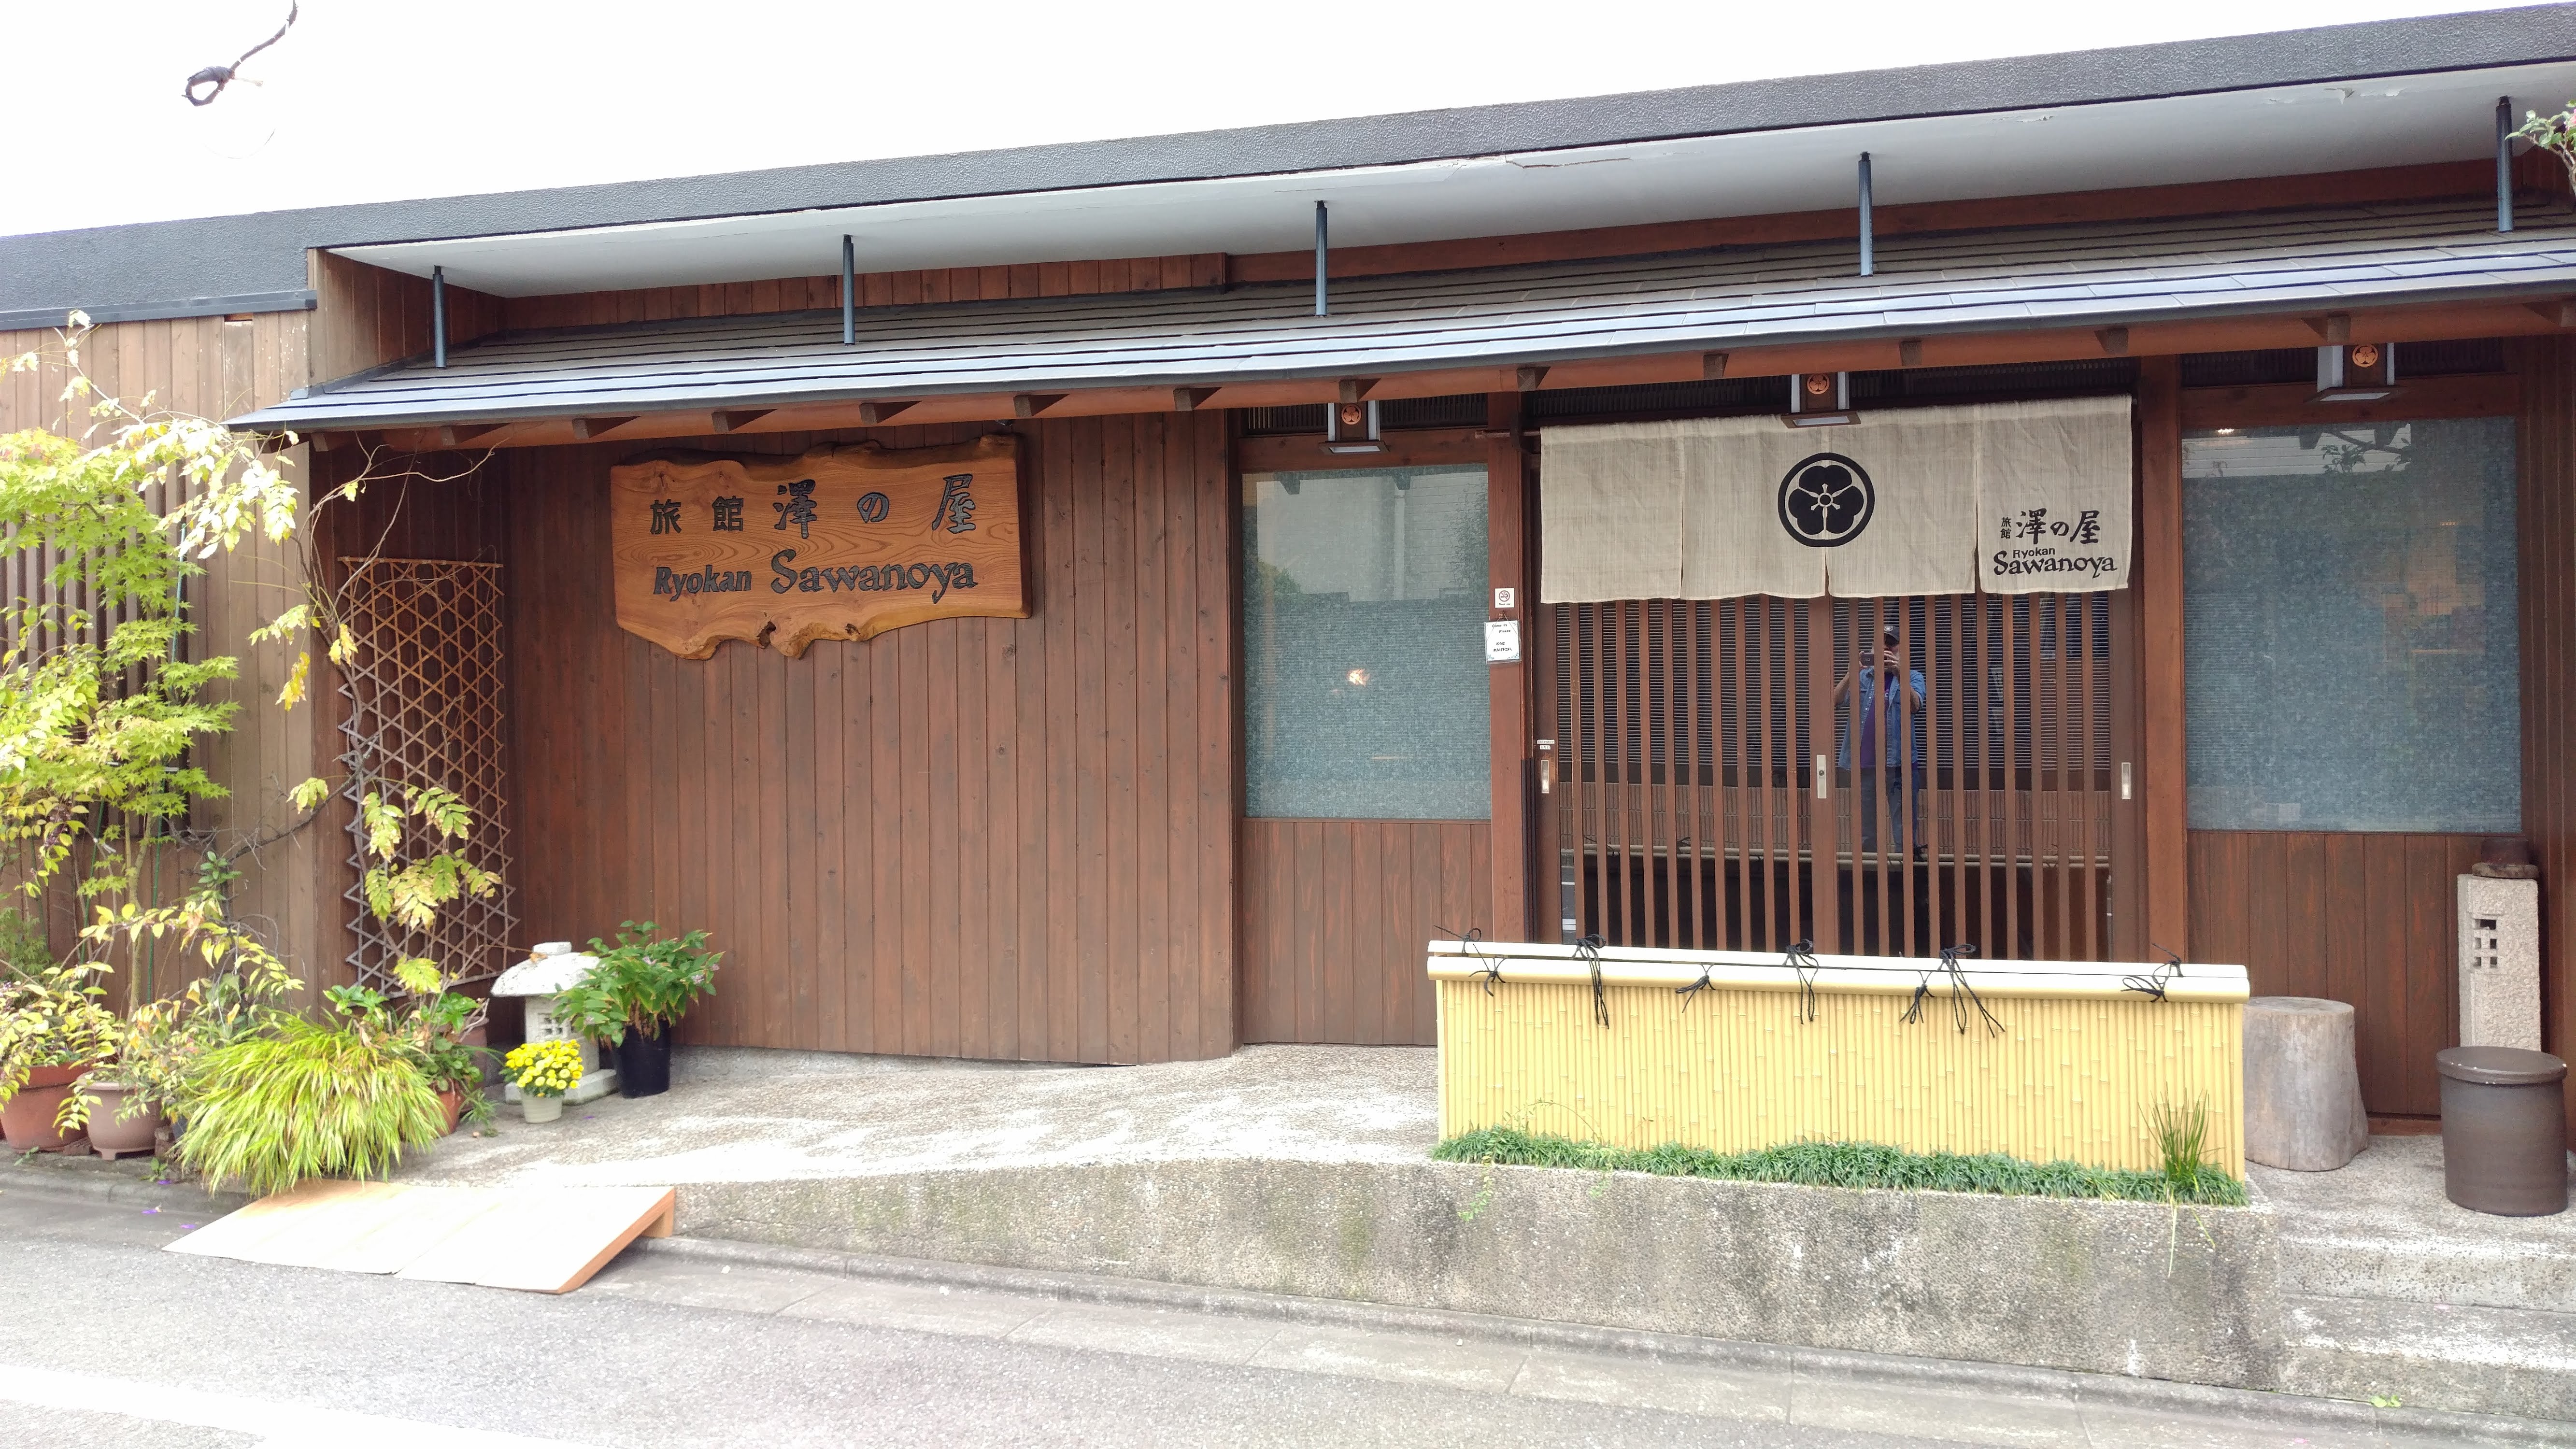 Ryokan Sawanoya entrance